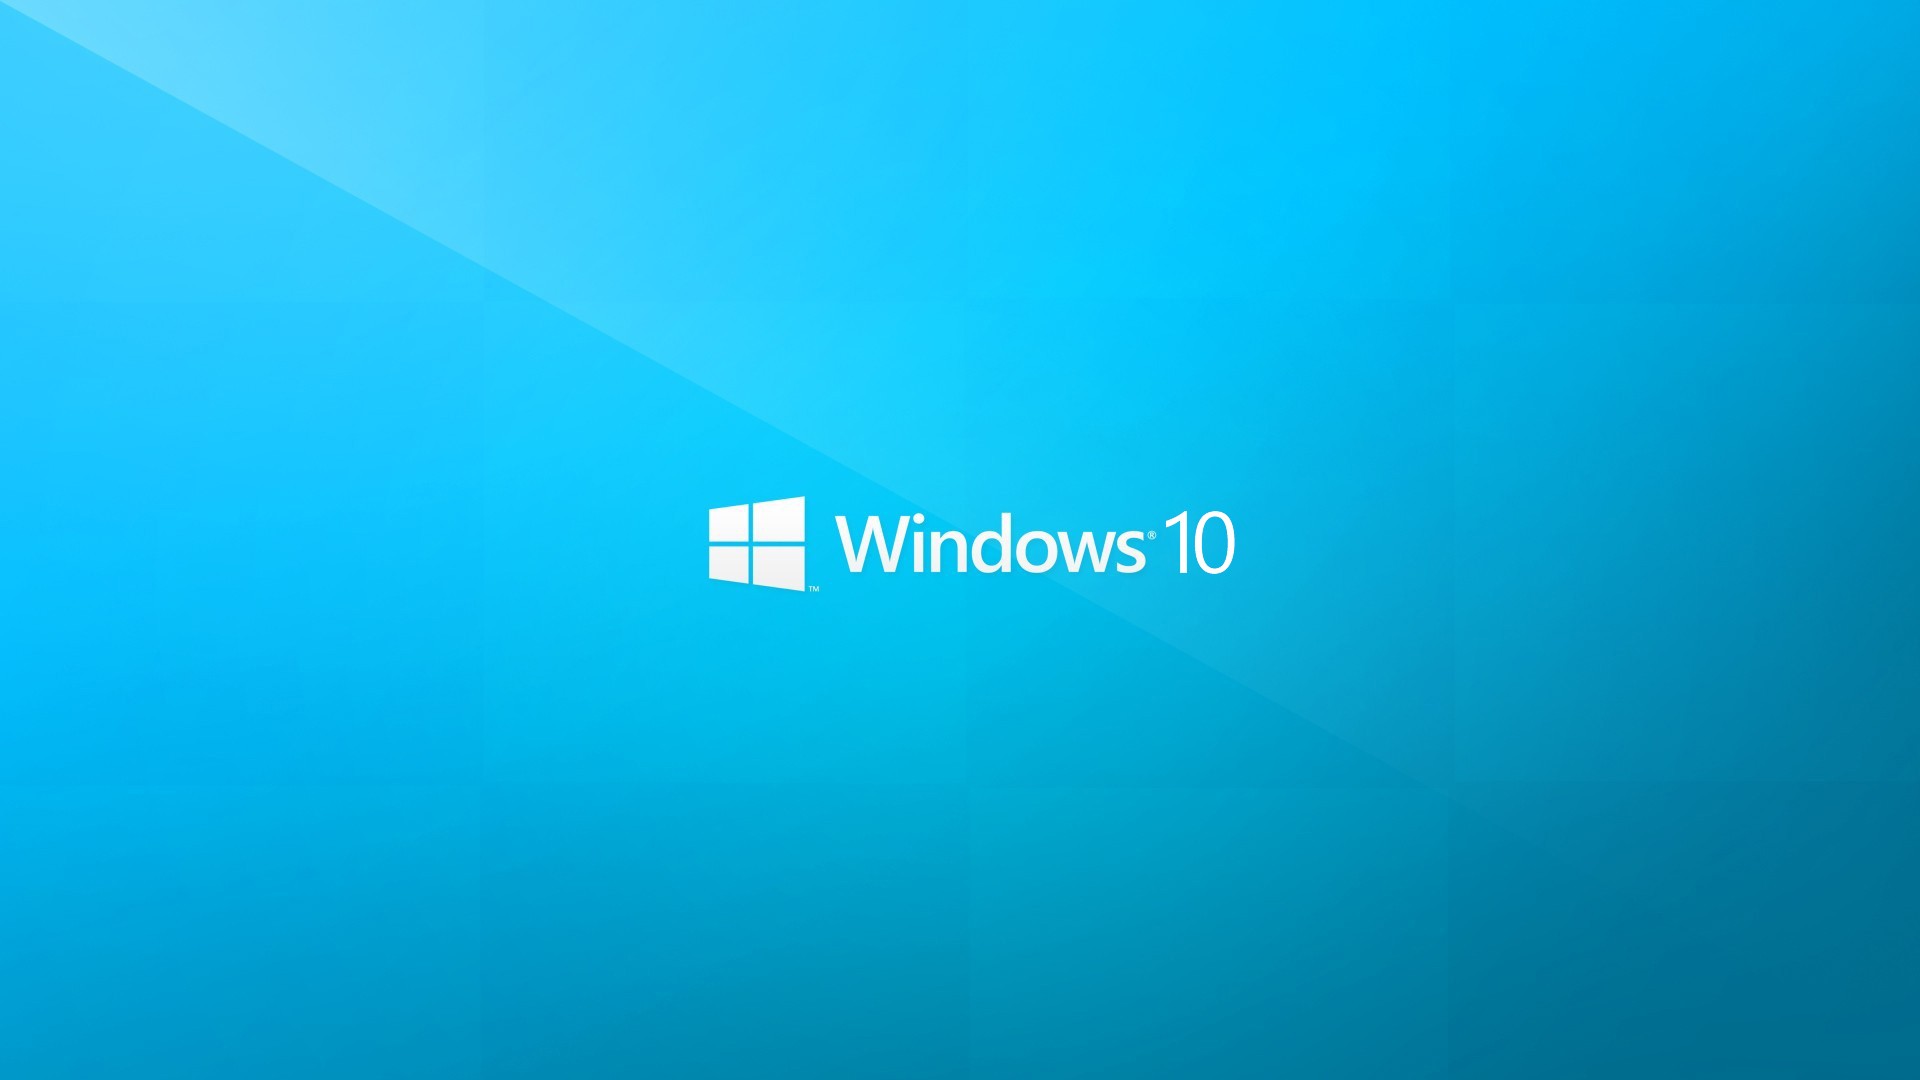 Windows 10: Cùng khám phá bộ sưu tập hình nền Windows 10 độc đáo và đẹp mắt để tô điểm cho màn hình của bạn.